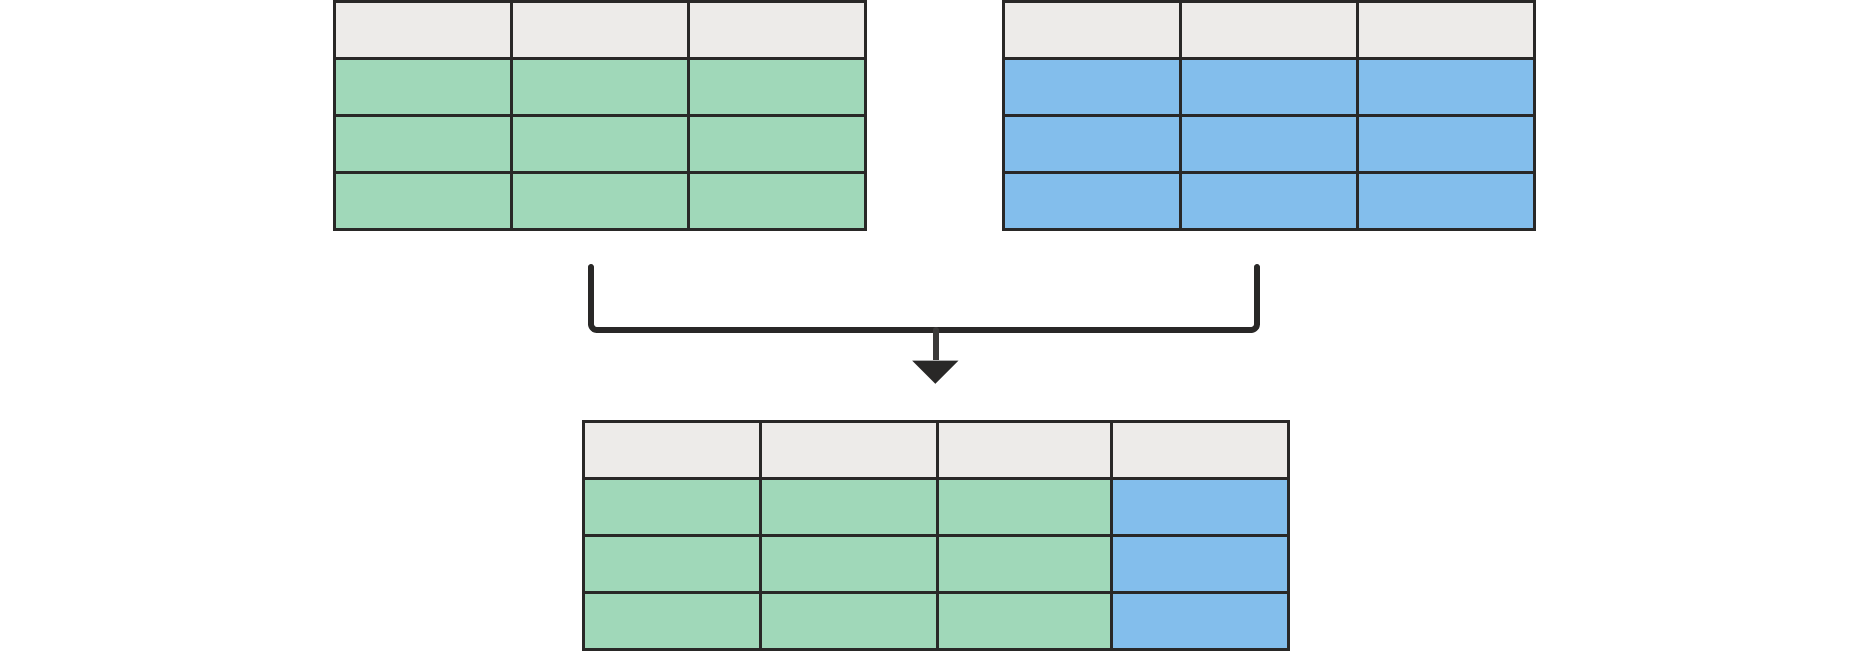 Diagram znázorňující dvě prázdné tabulky v horní části sloučené s tabulkou dole se všemi sloupci z levé tabulky a jednou z pravé tabulky